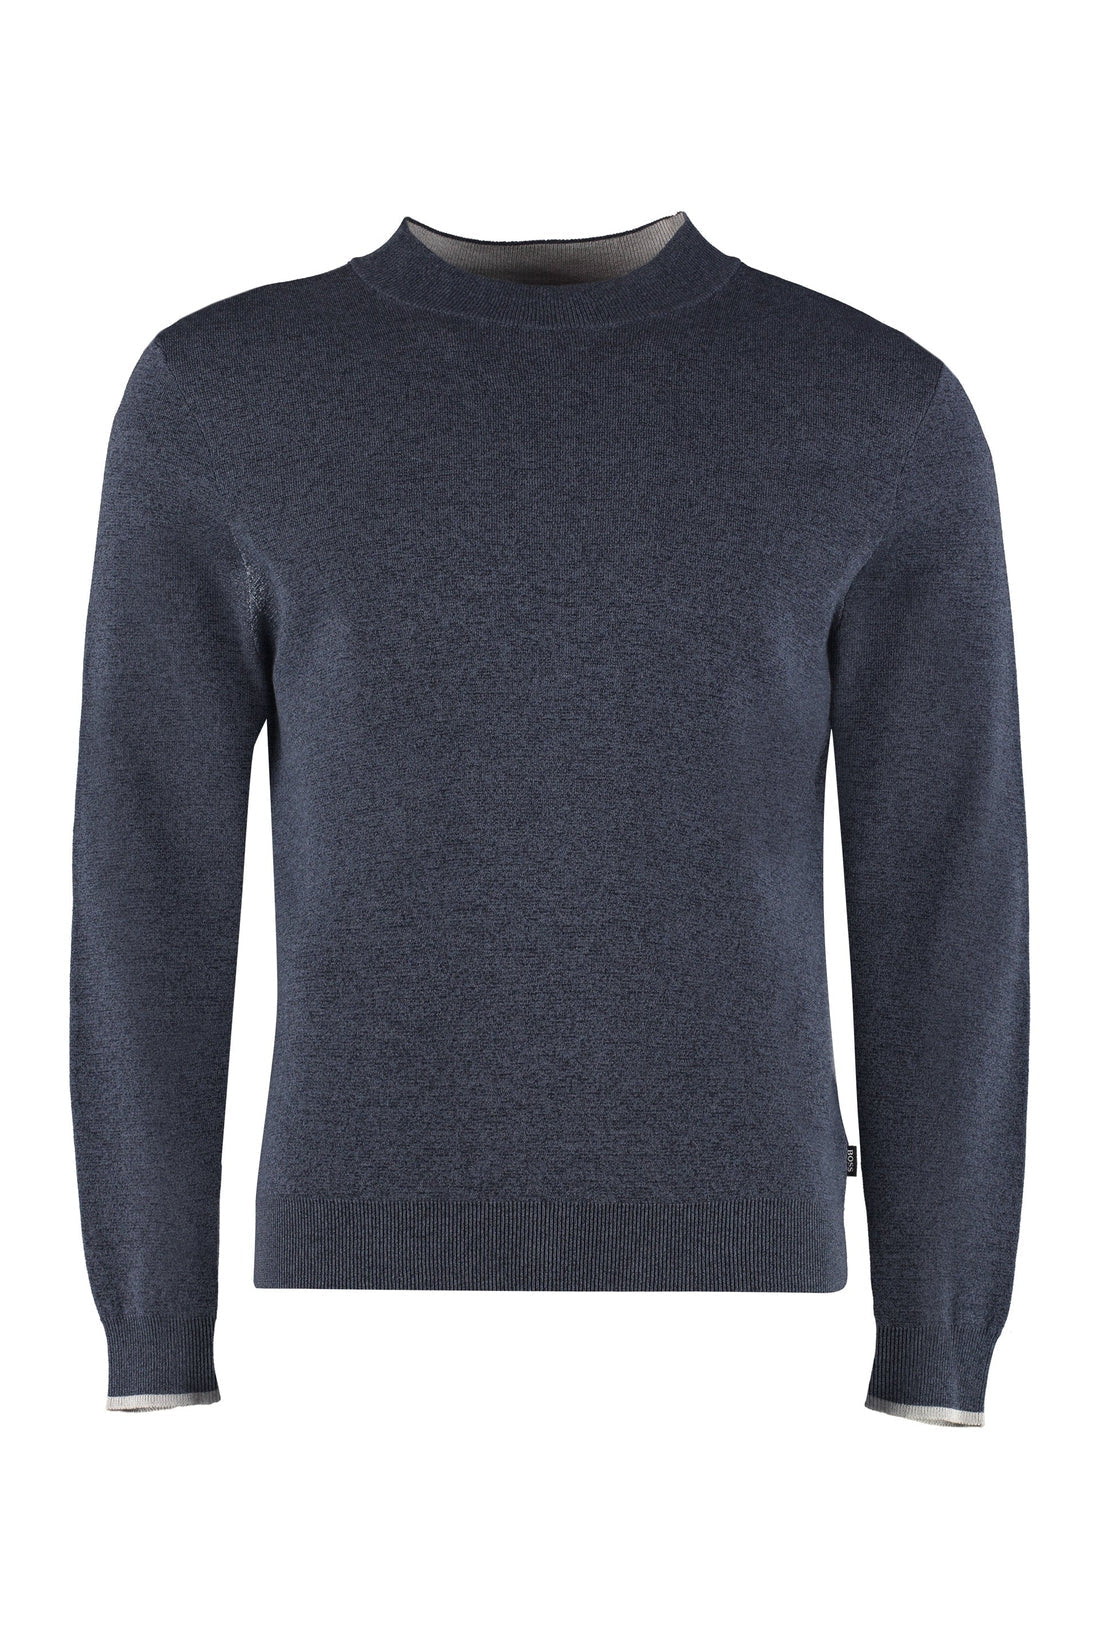 BOSS-OUTLET-SALE-Cotton sweater-ARCHIVIST